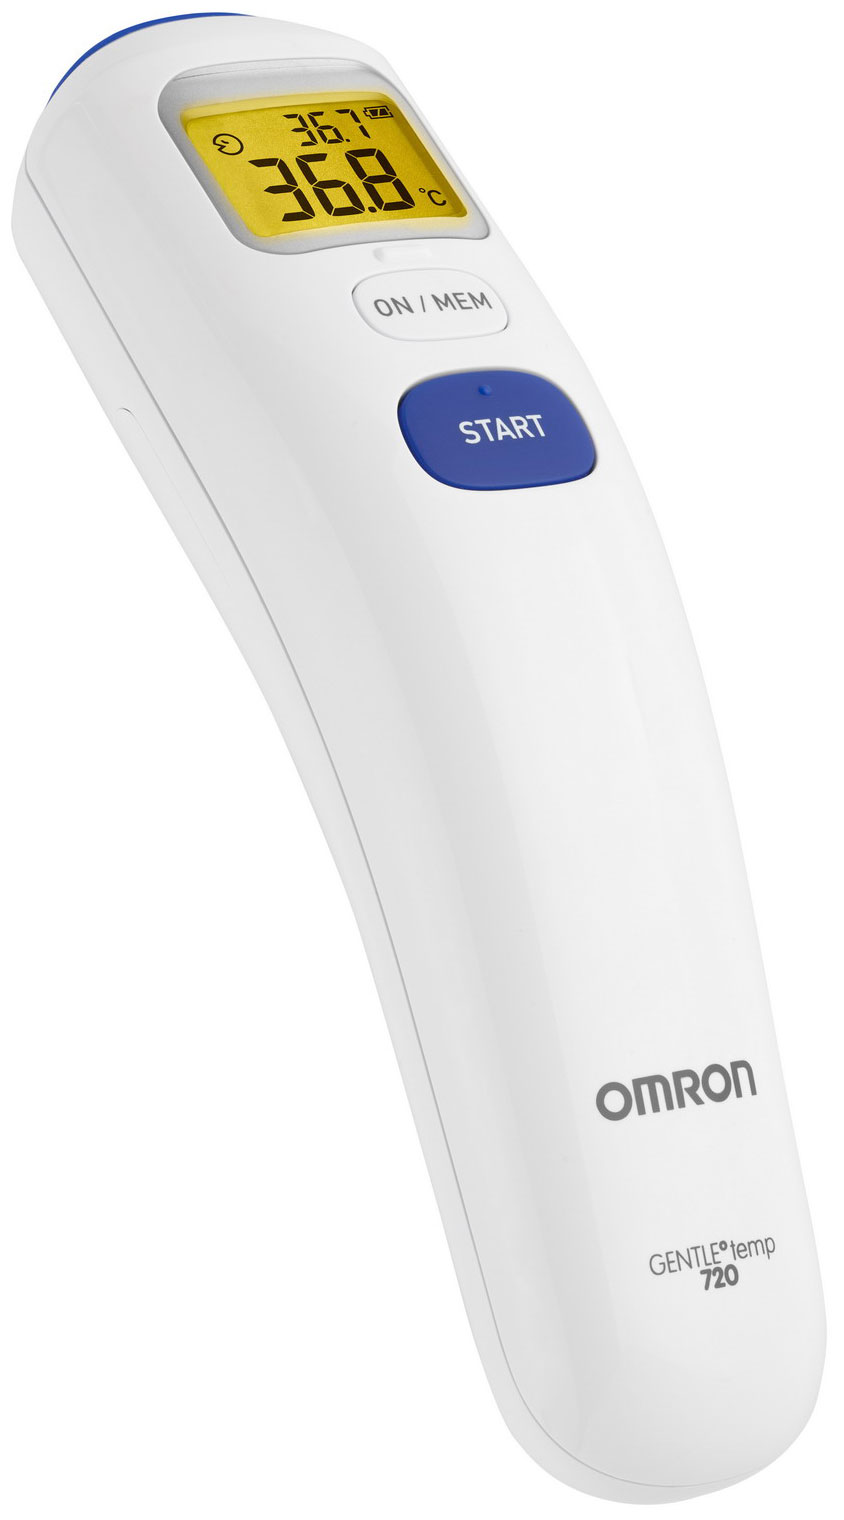 omron gentle temp 720 термометр инфакрасный Бесконтактный инфракрасный термометр OMRON Gentle Temp 720 (MC-720-E)